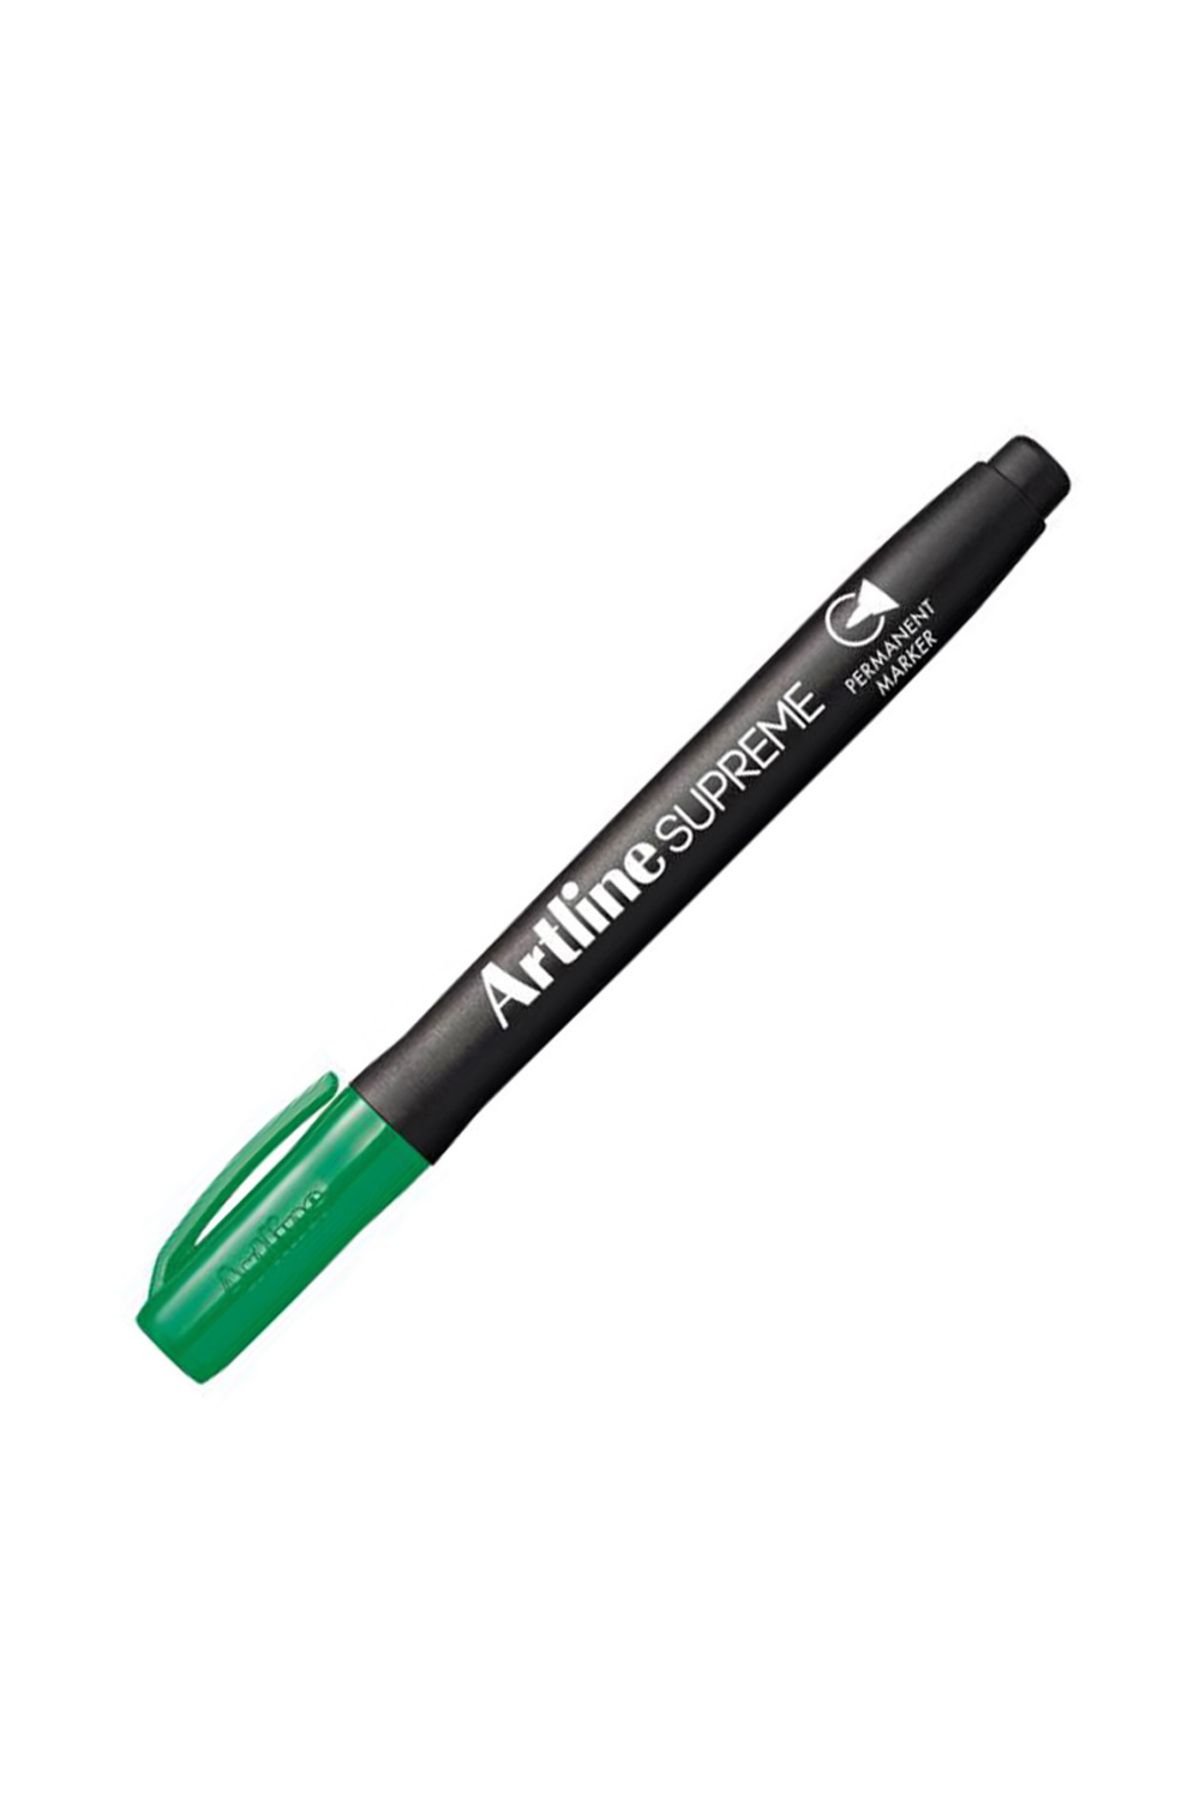 artline Supreme Kalıcı Markör 1 Mm - Yeşil